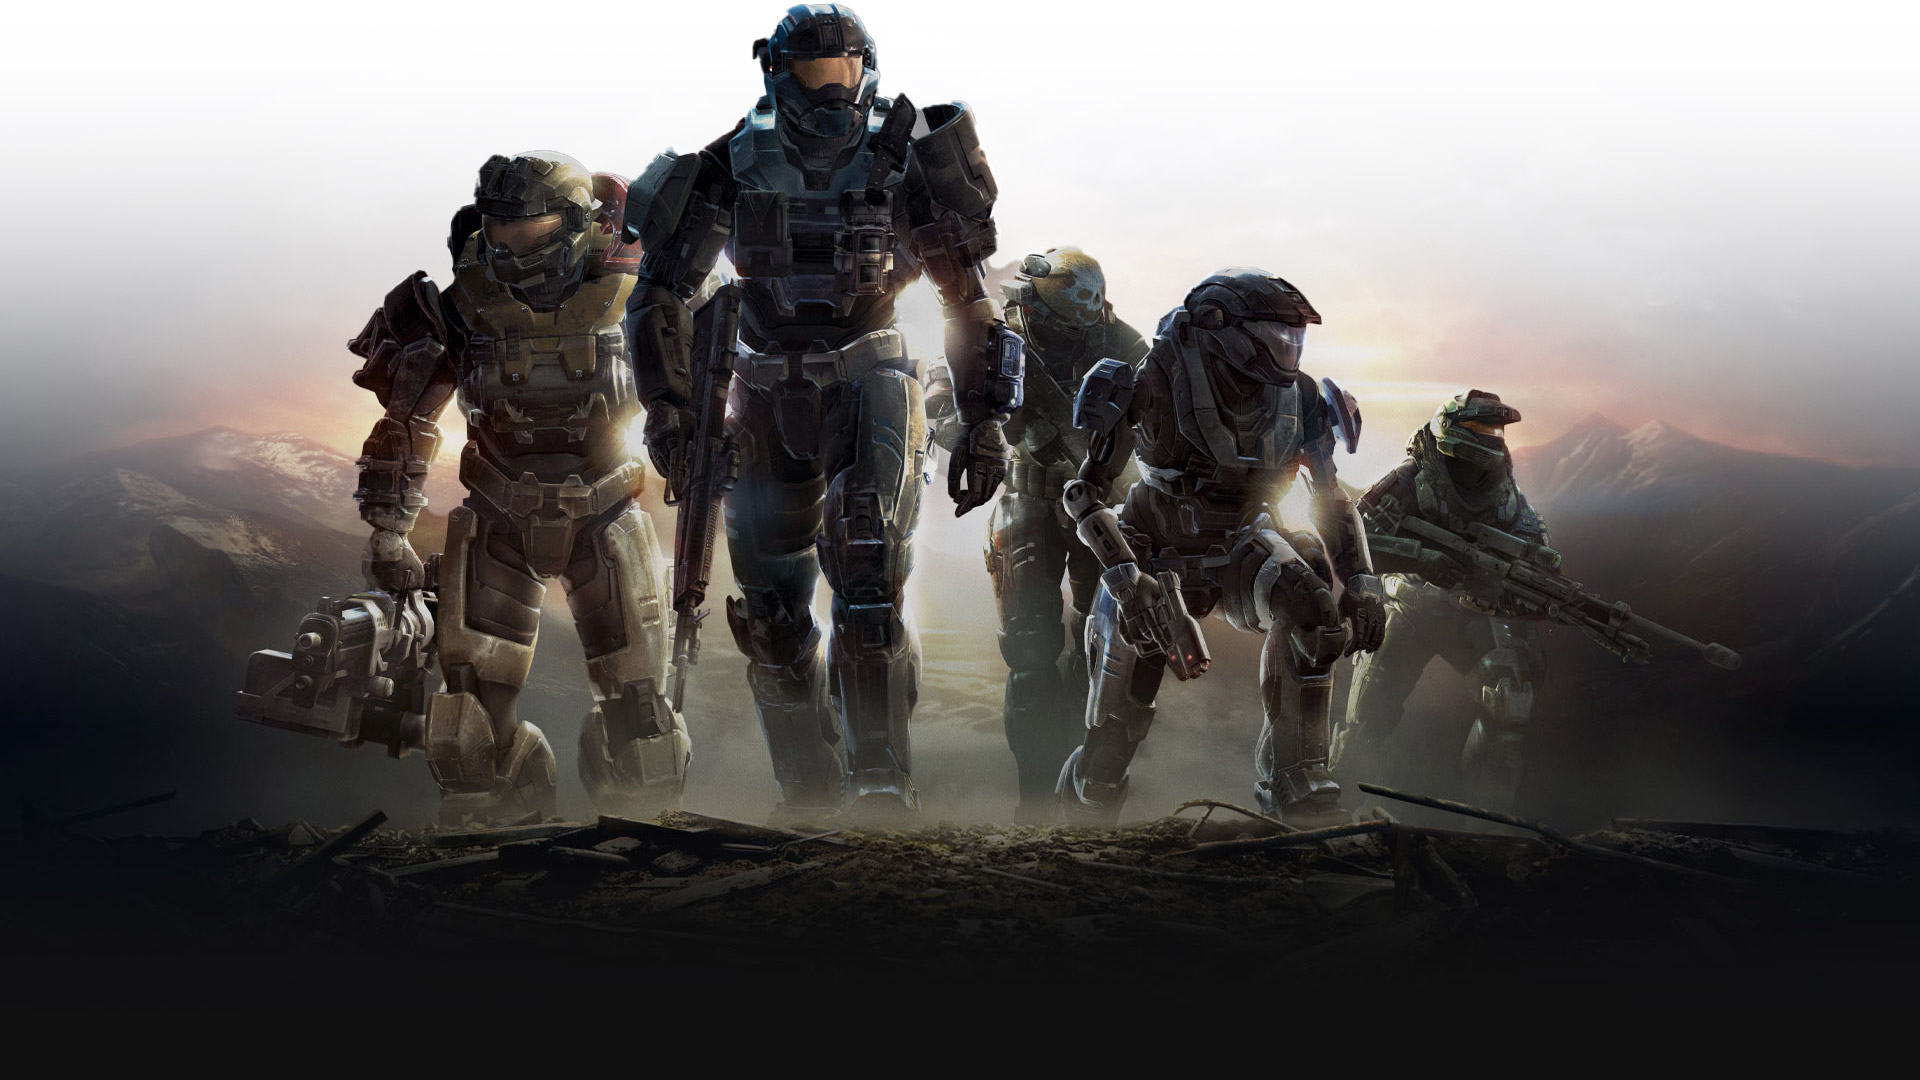 Spartani ze hry Halo Reach s připravenými zbraněmi jdou do kopce